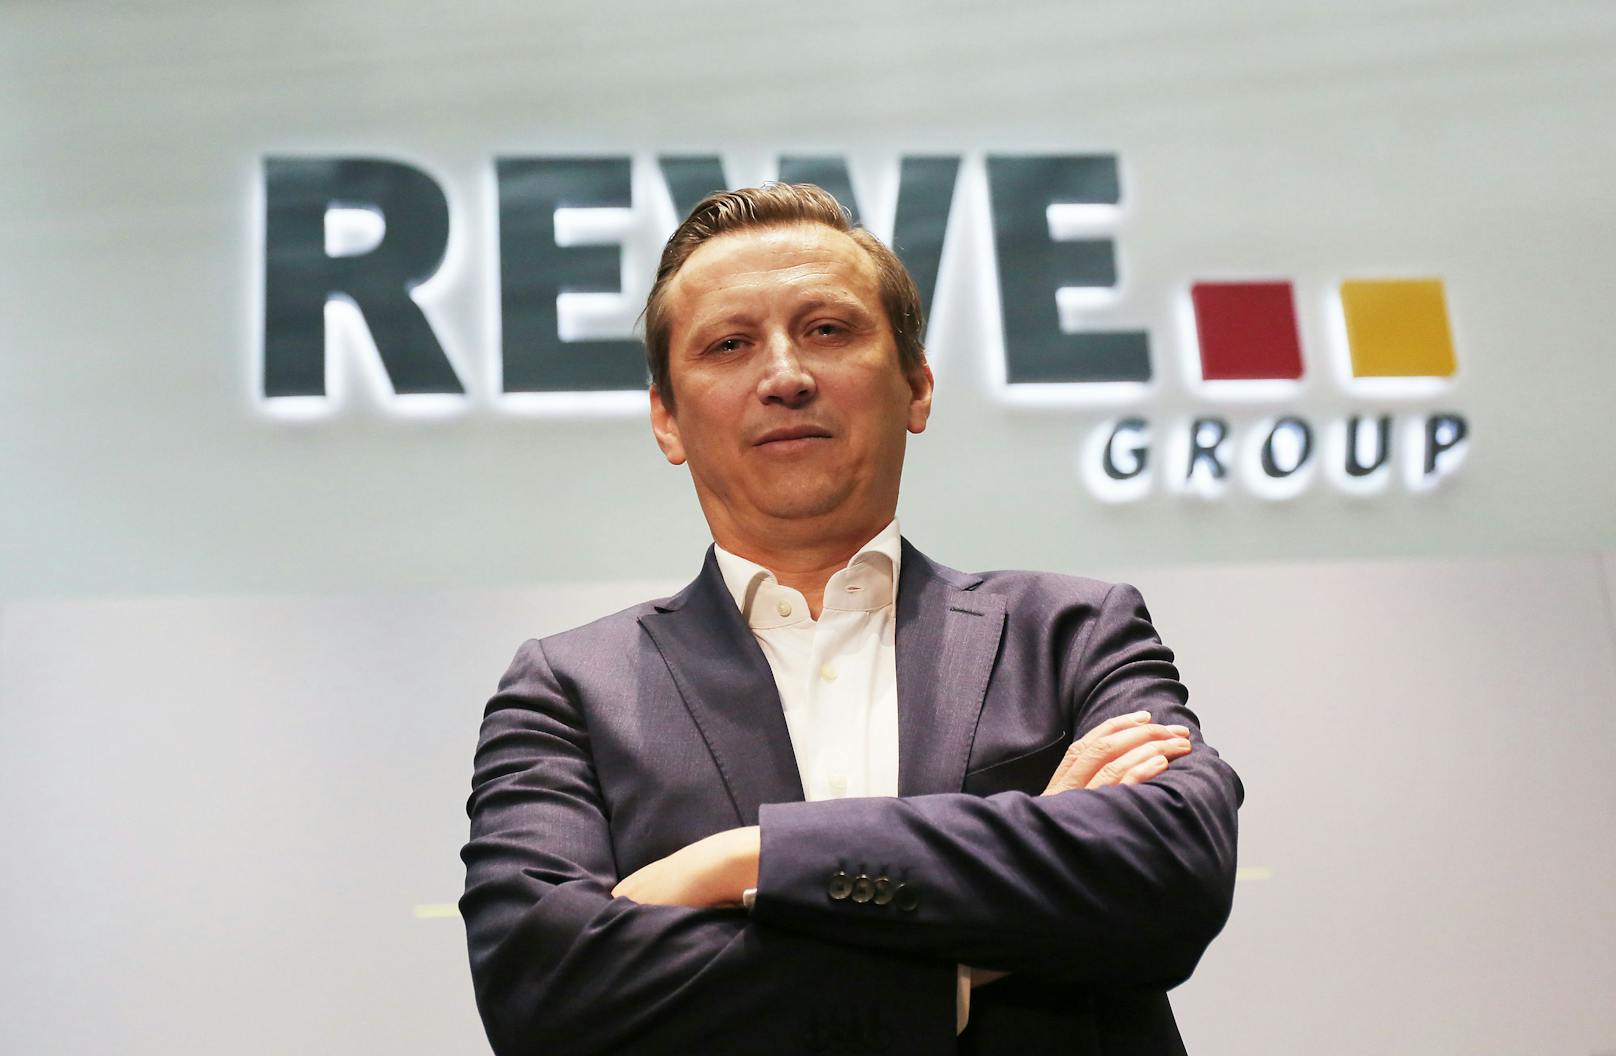 Lionel Souque ist Vorstandsvorsitzender der Rewe Group.